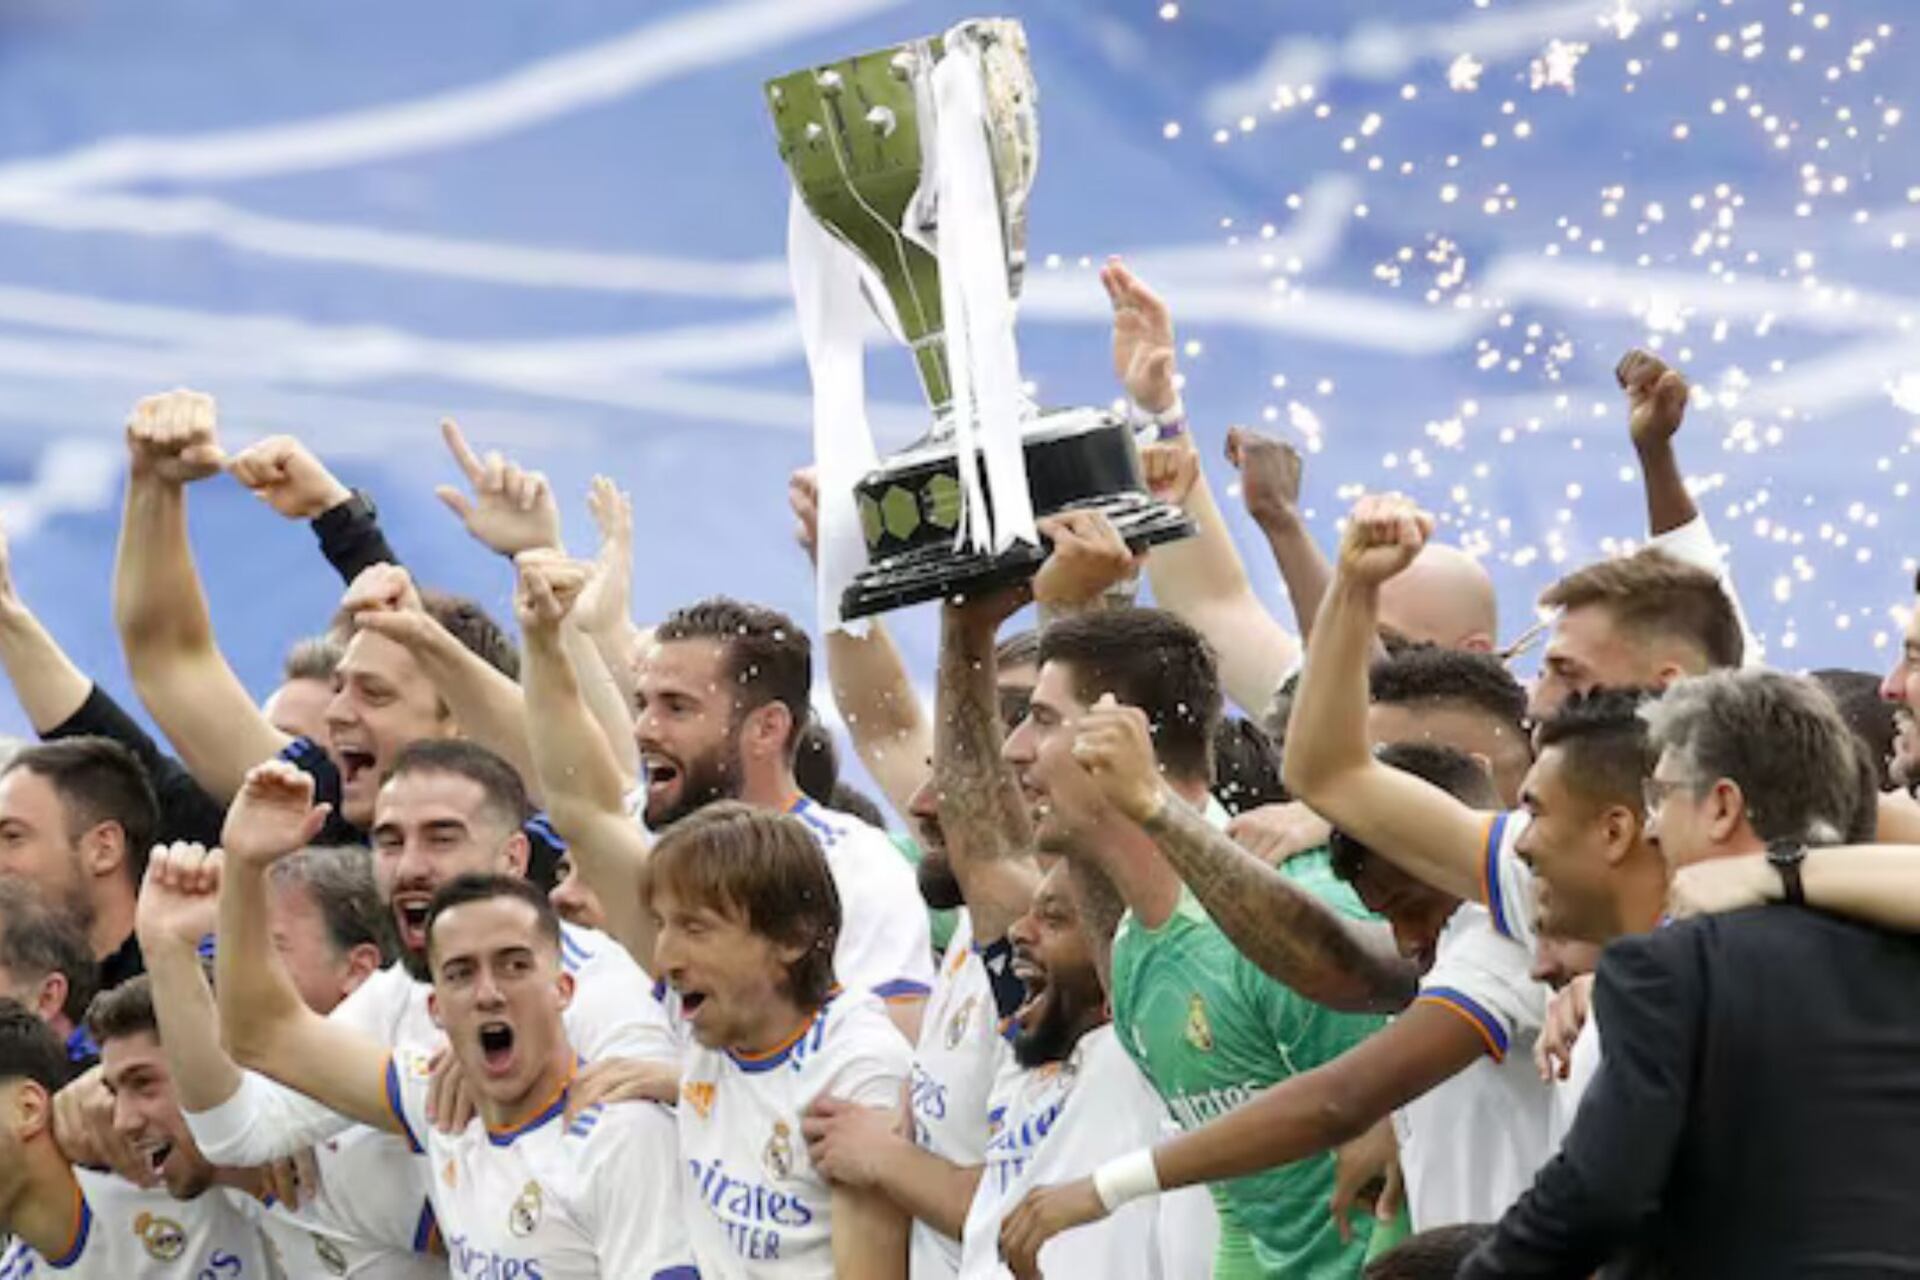 (VIDEO) Dieron el trofeo de La Liga al Madrid, la extraña reacción de los jugadores